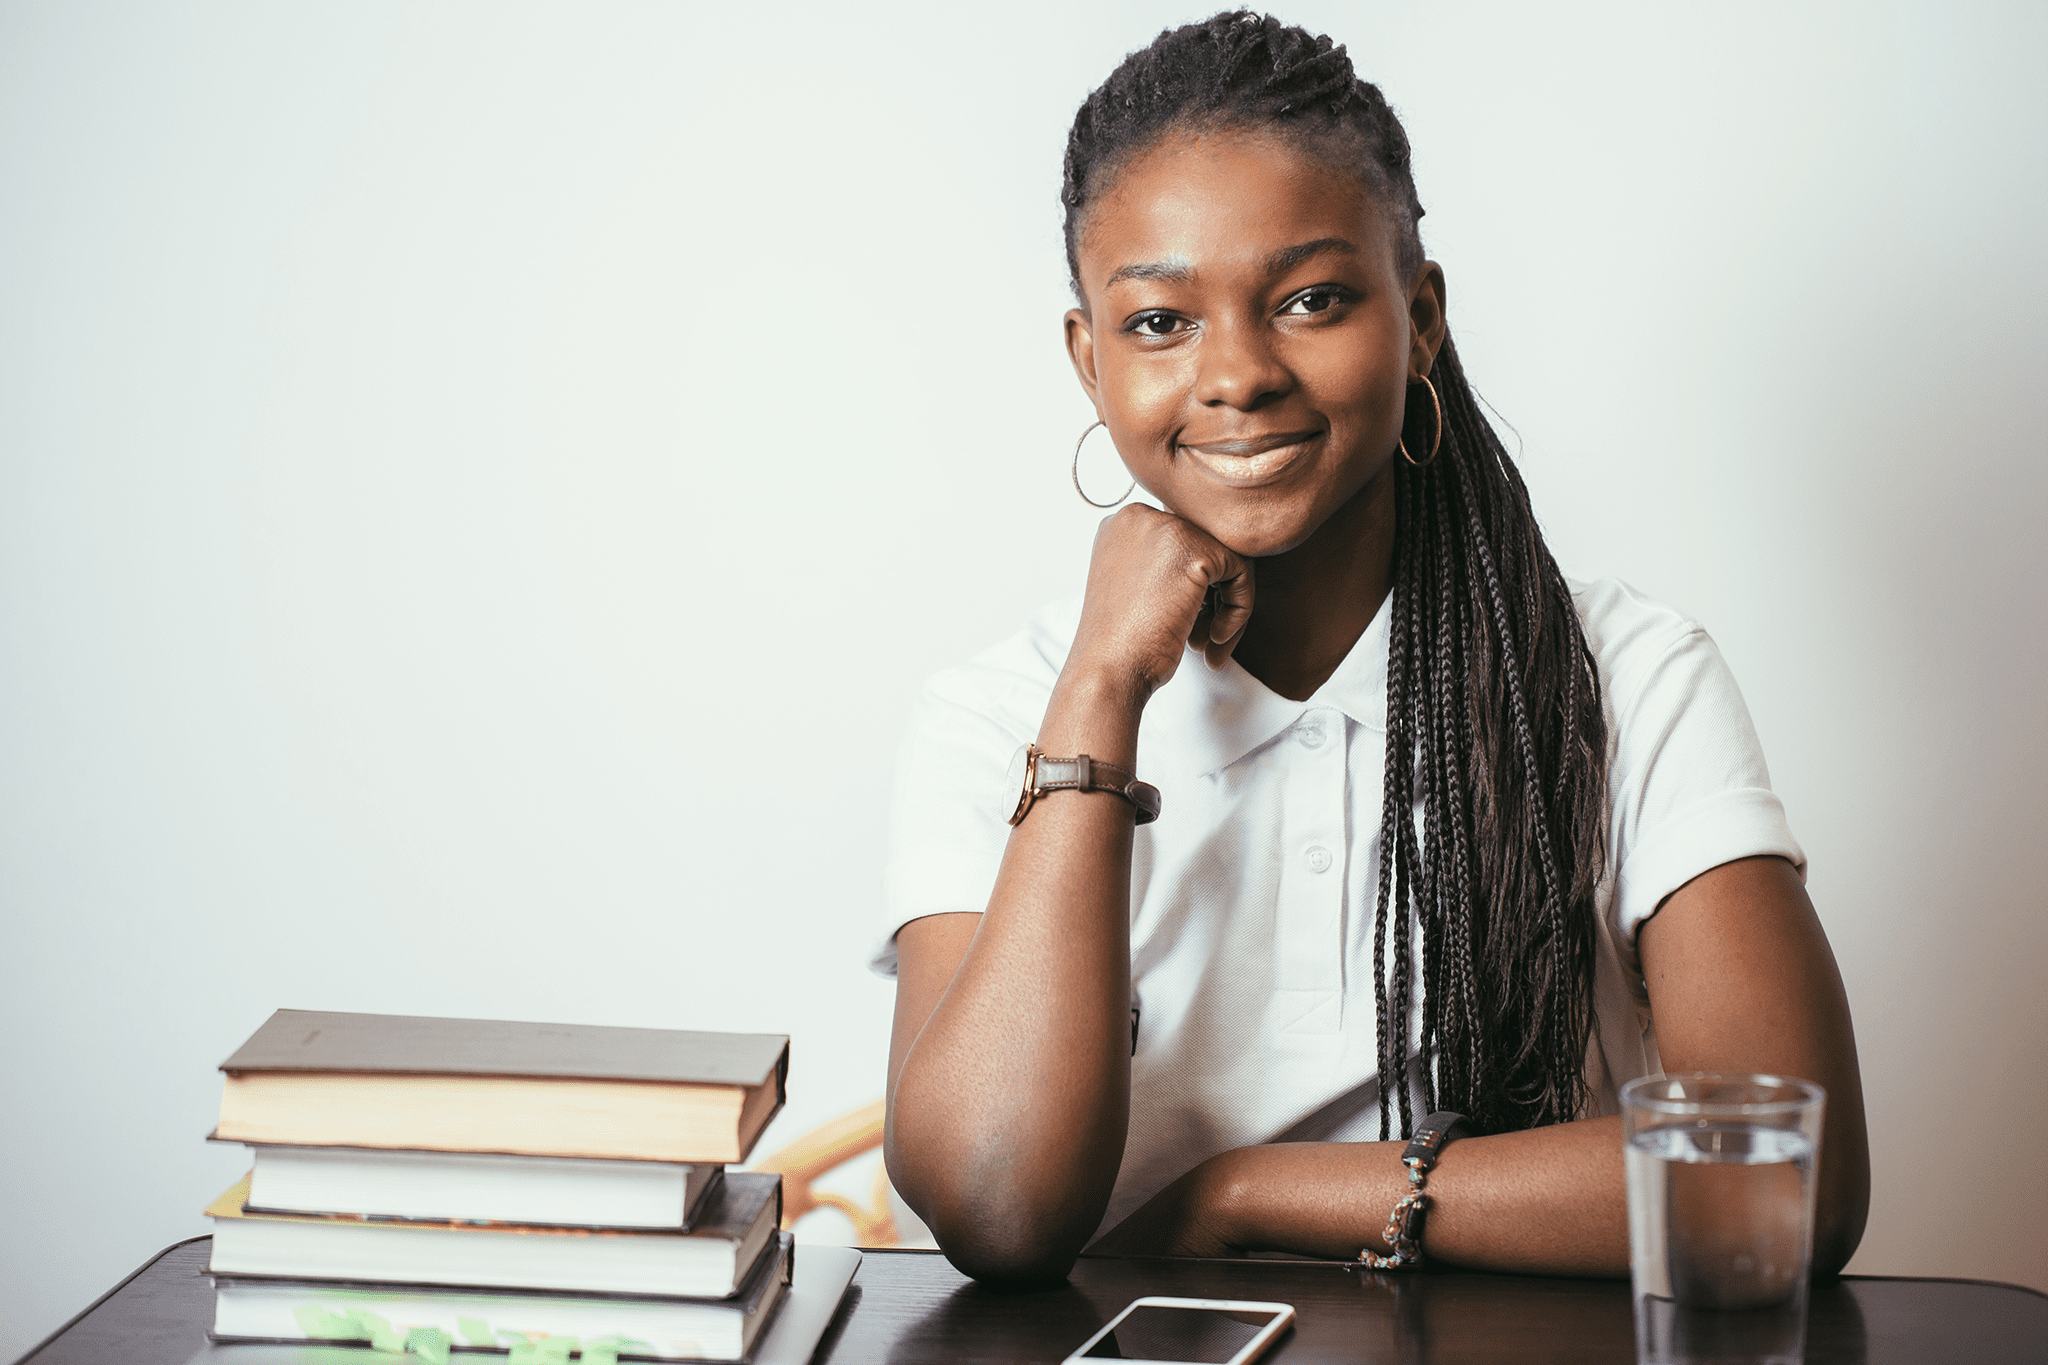 Une jeune fille noire qui semble confiante est accoudé sur un bureau et est entourée de livres, crayons et d'un verre d’eau. Elle est prête à se mettre au travail. Photo.